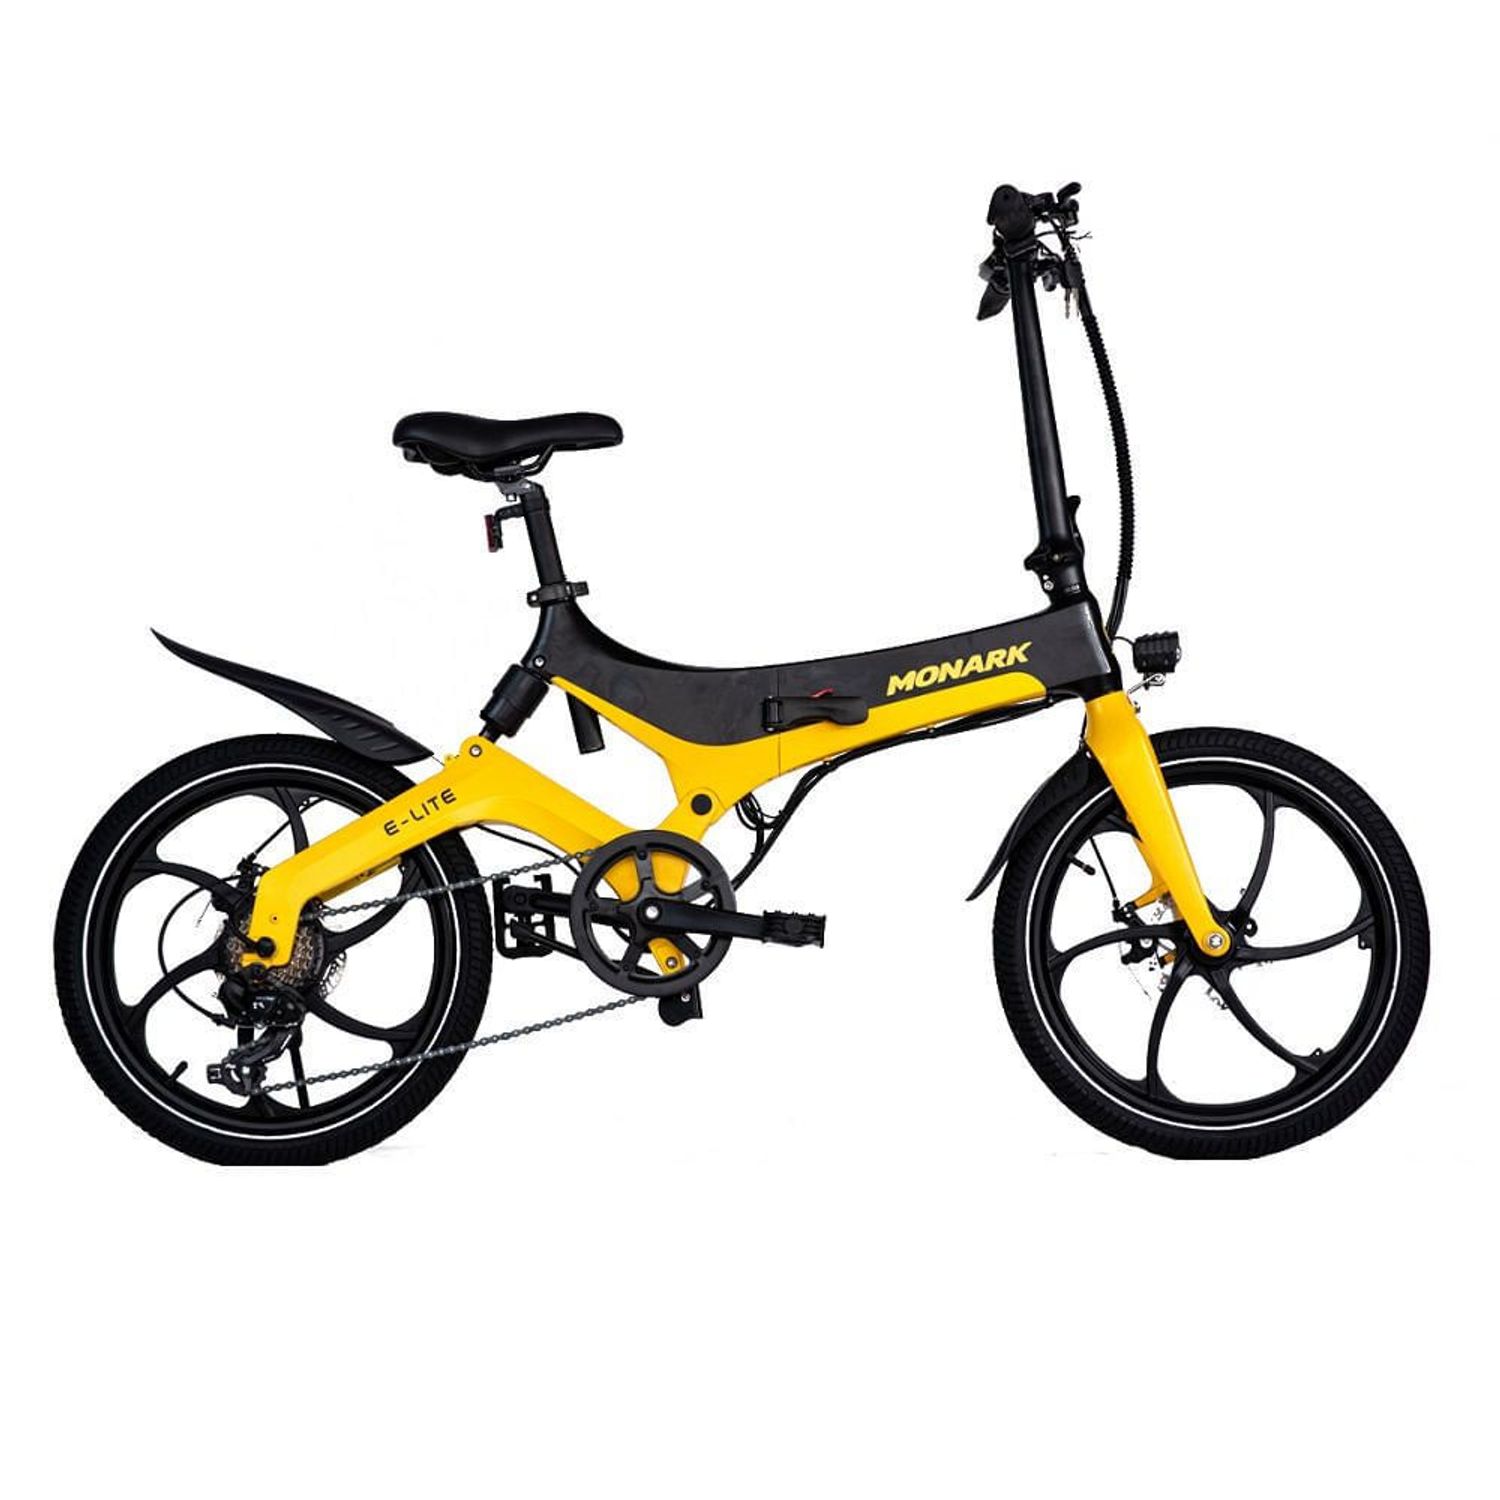 Biker Chopper bicicleta deporte gafas de sol astilla libre amarillo efecto espejo 